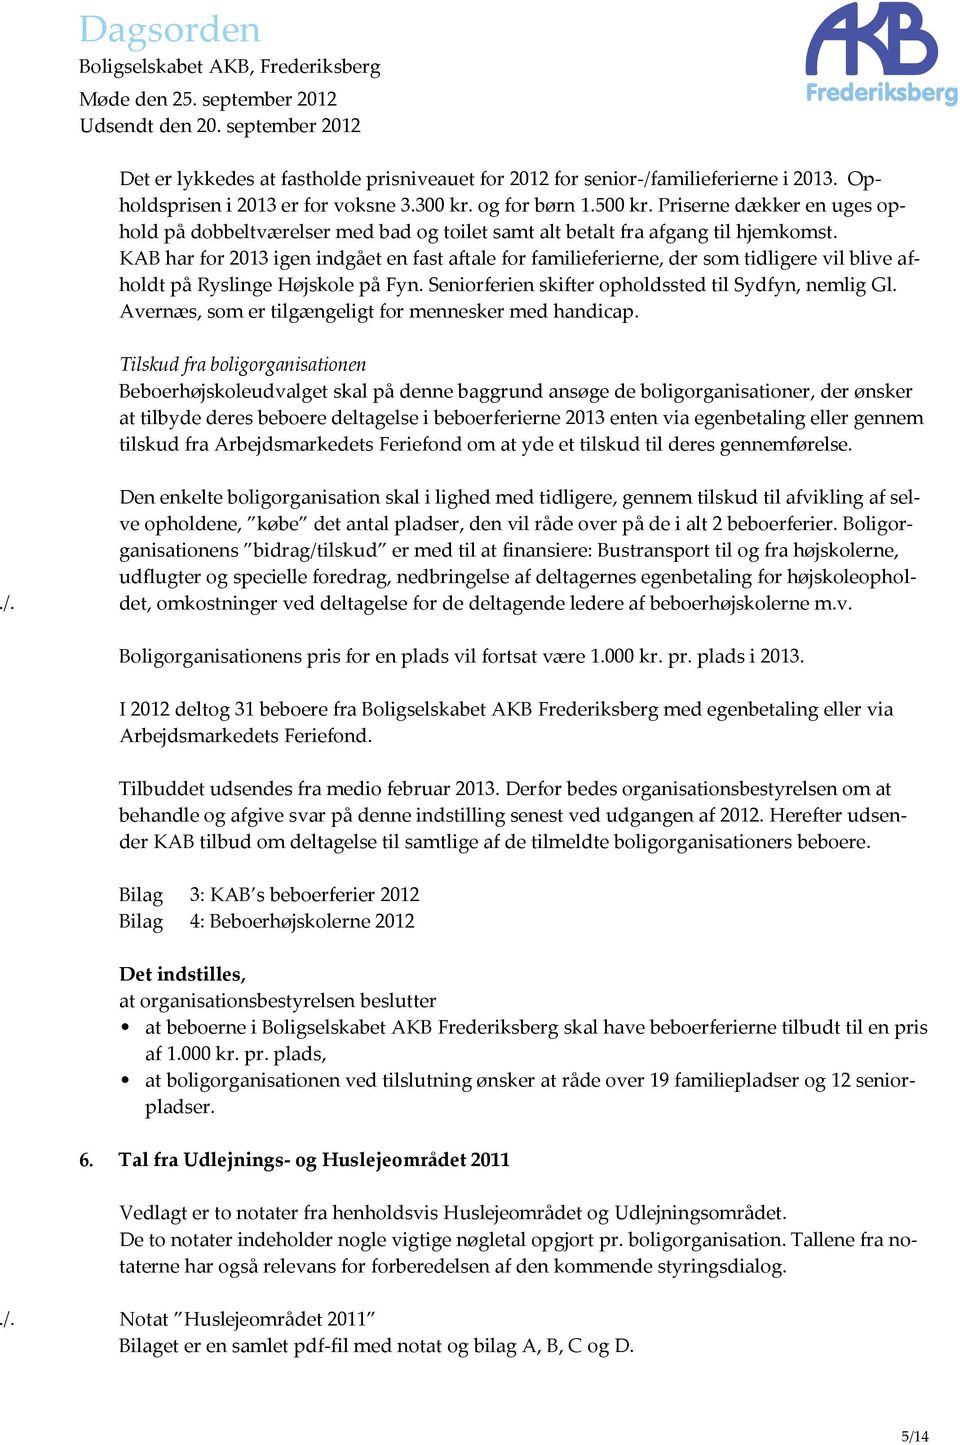 KAB har for 2013 igen indgået en fast aftale for familieferierne, der som tidligere vil blive afholdt på Ryslinge Højskole på Fyn. Seniorferien skifter opholdssted til Sydfyn, nemlig Gl.